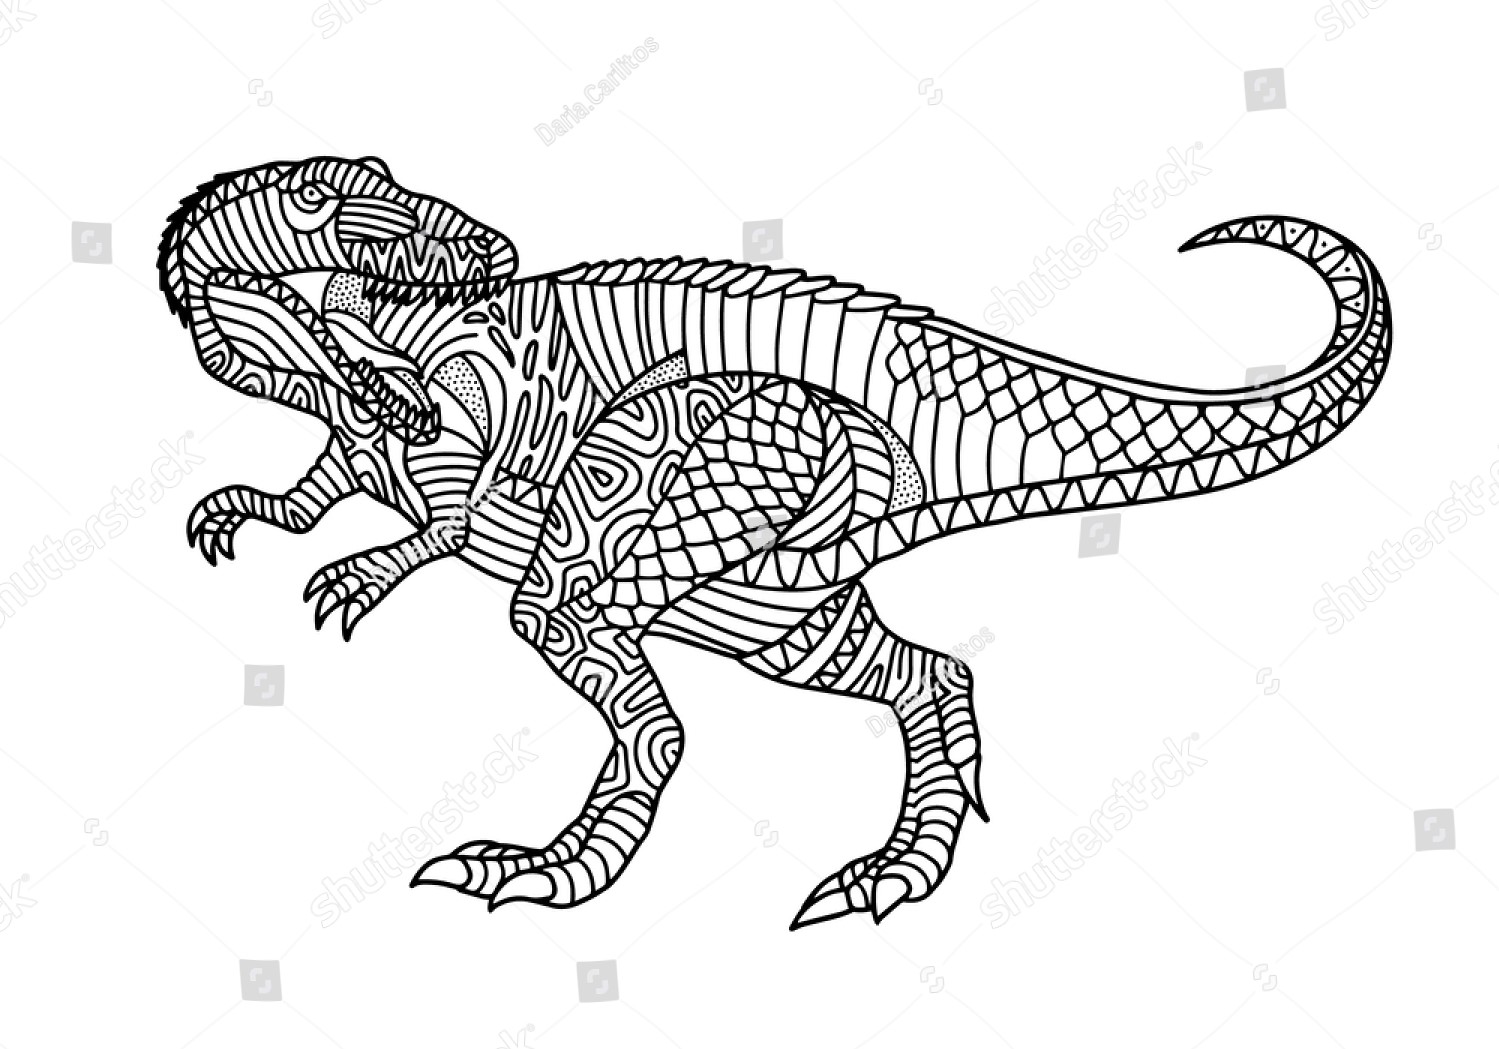 Allosaurus-Details von Allosaurus